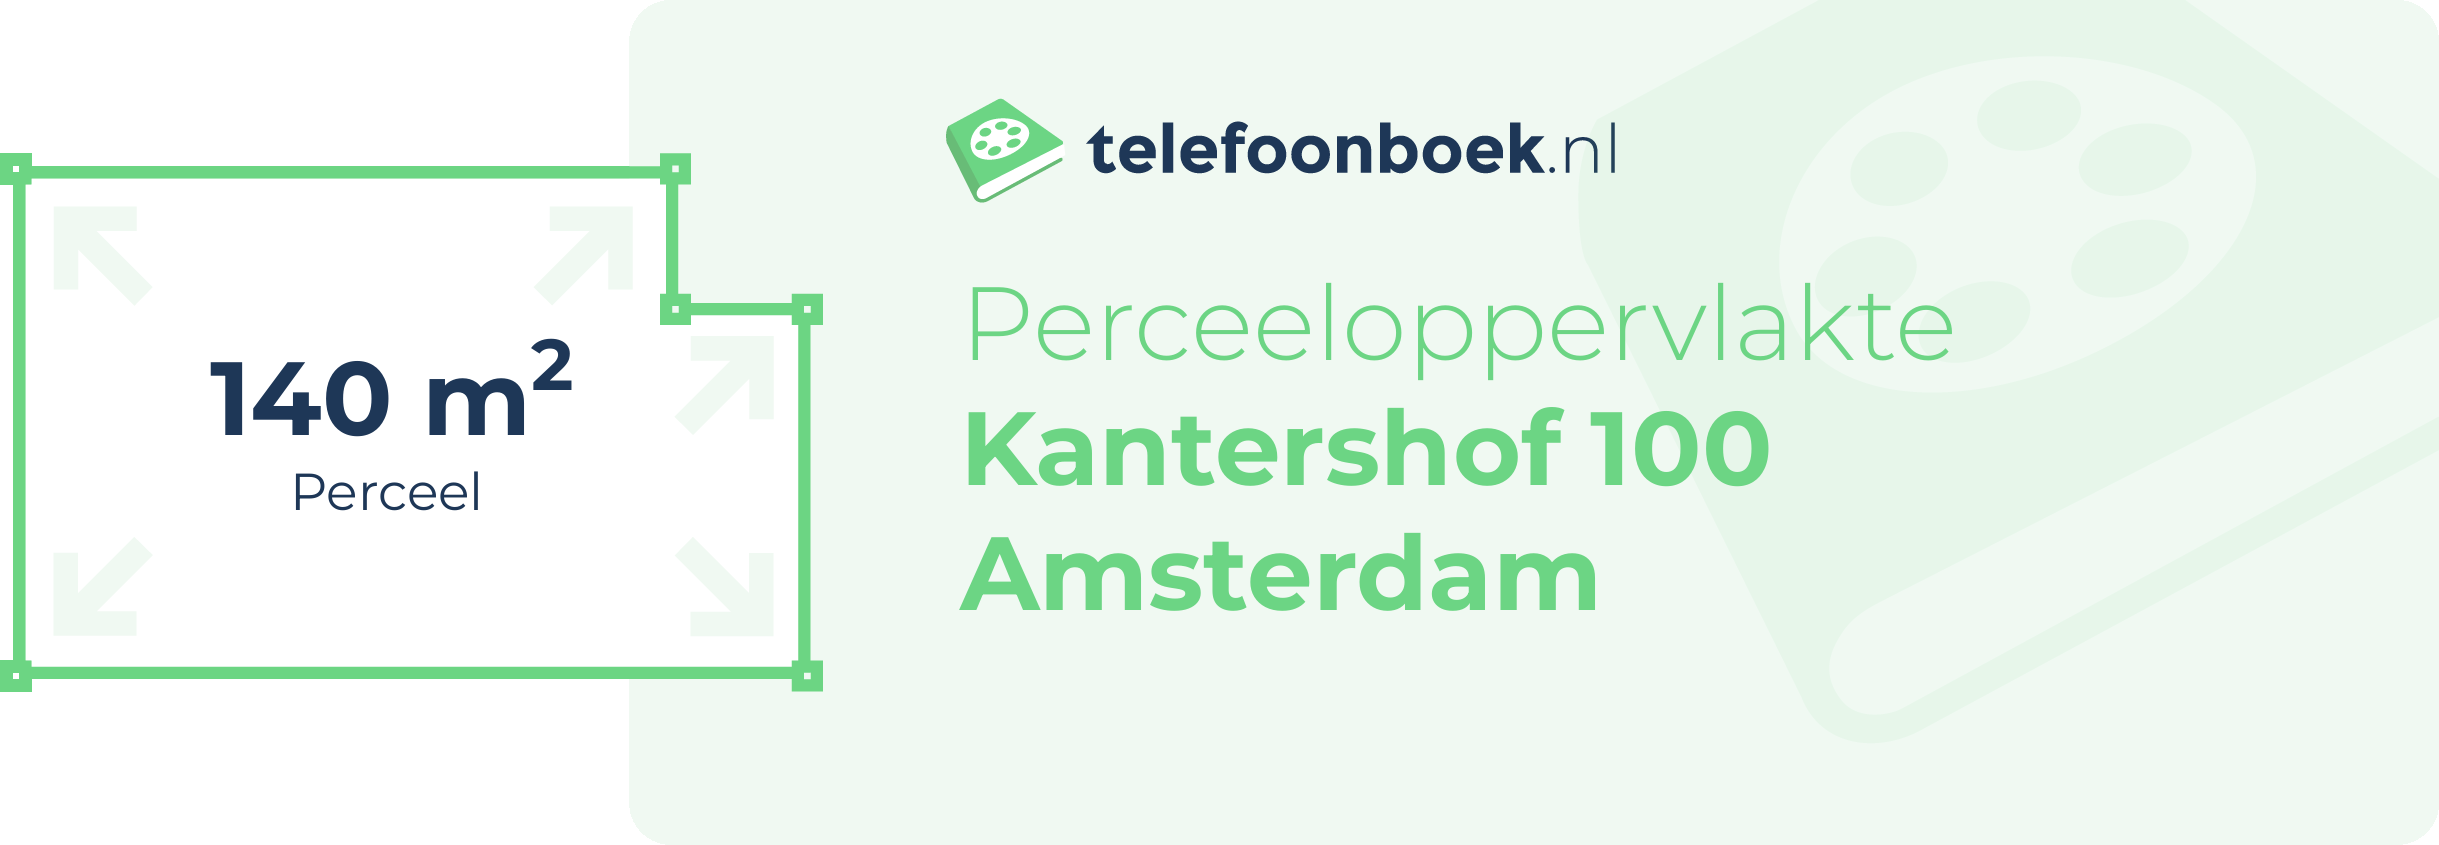 Perceeloppervlakte Kantershof 100 Amsterdam